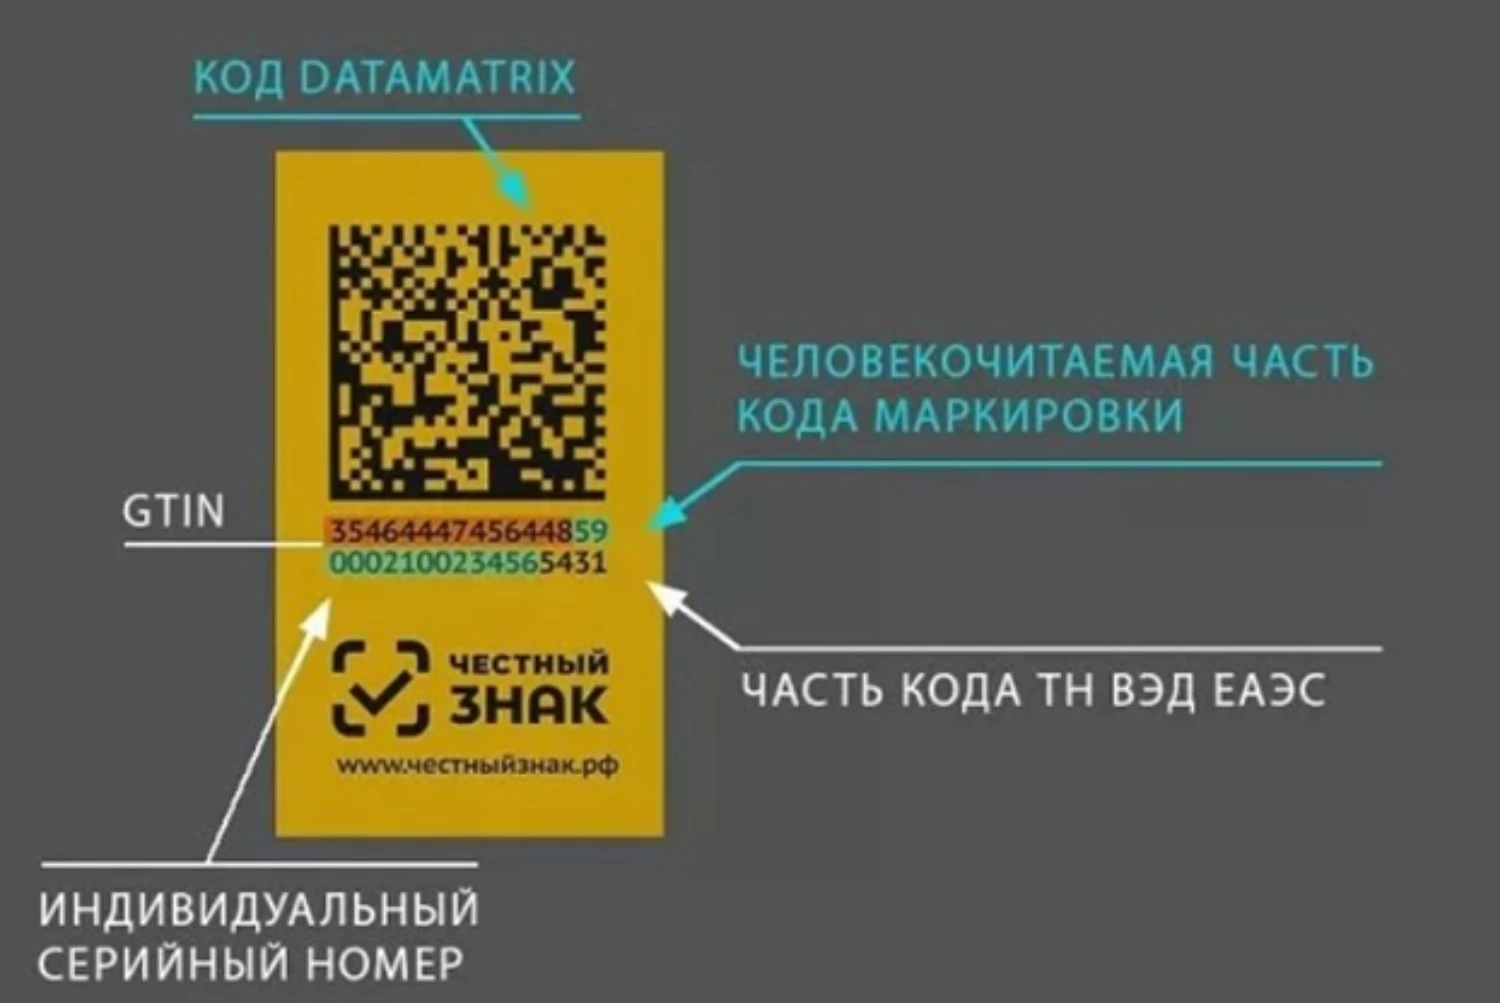 Код проду. Data Matrix коды. Пример кода маркировки. Код маркировки DATAMATRIX. Маркировка честный знак.